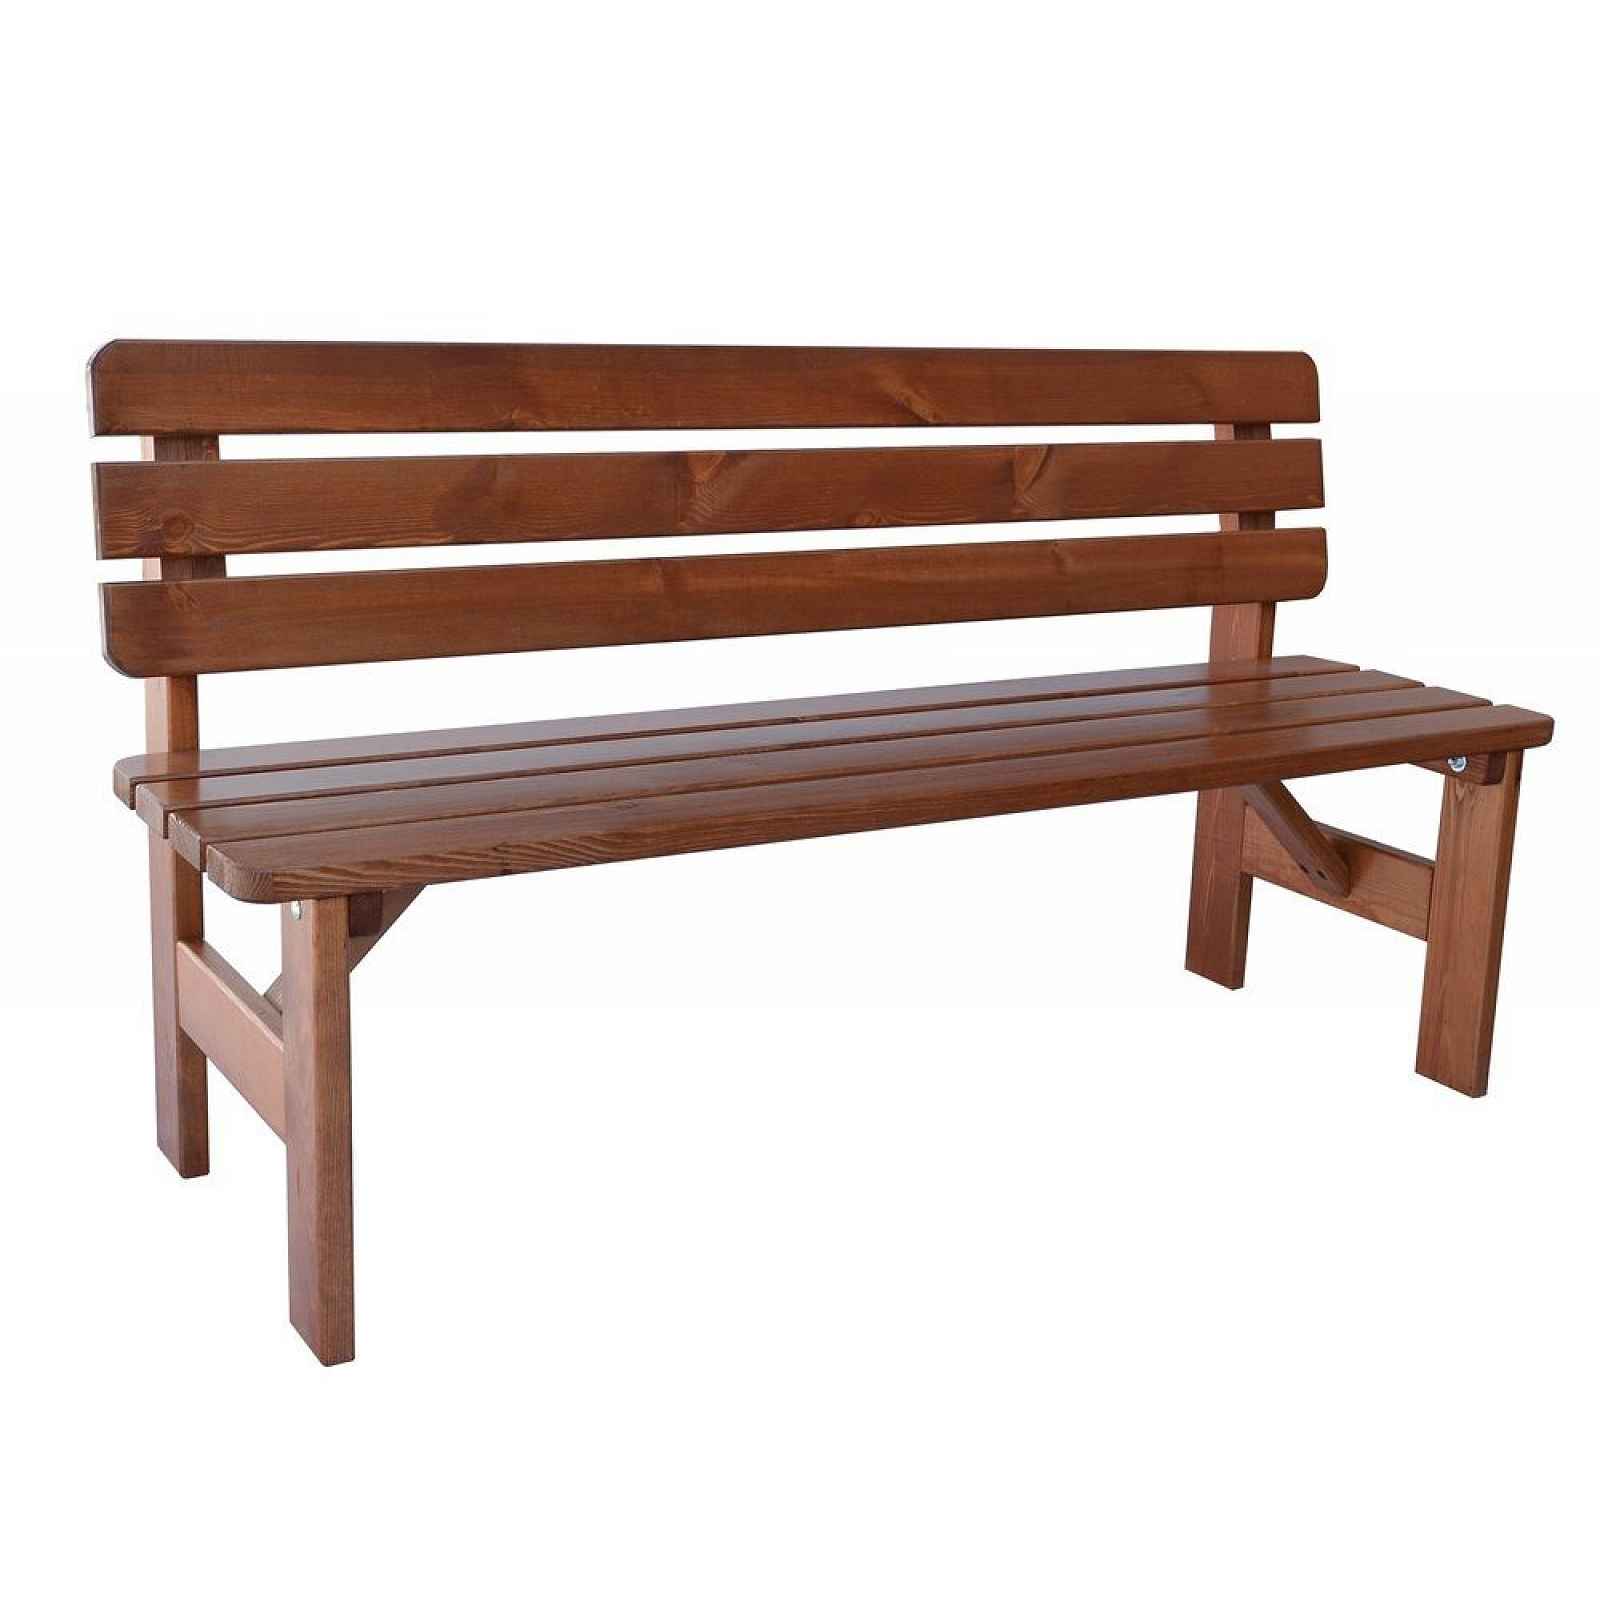 Zahradní dřevěná lavice Viking 150 cm lakovaná